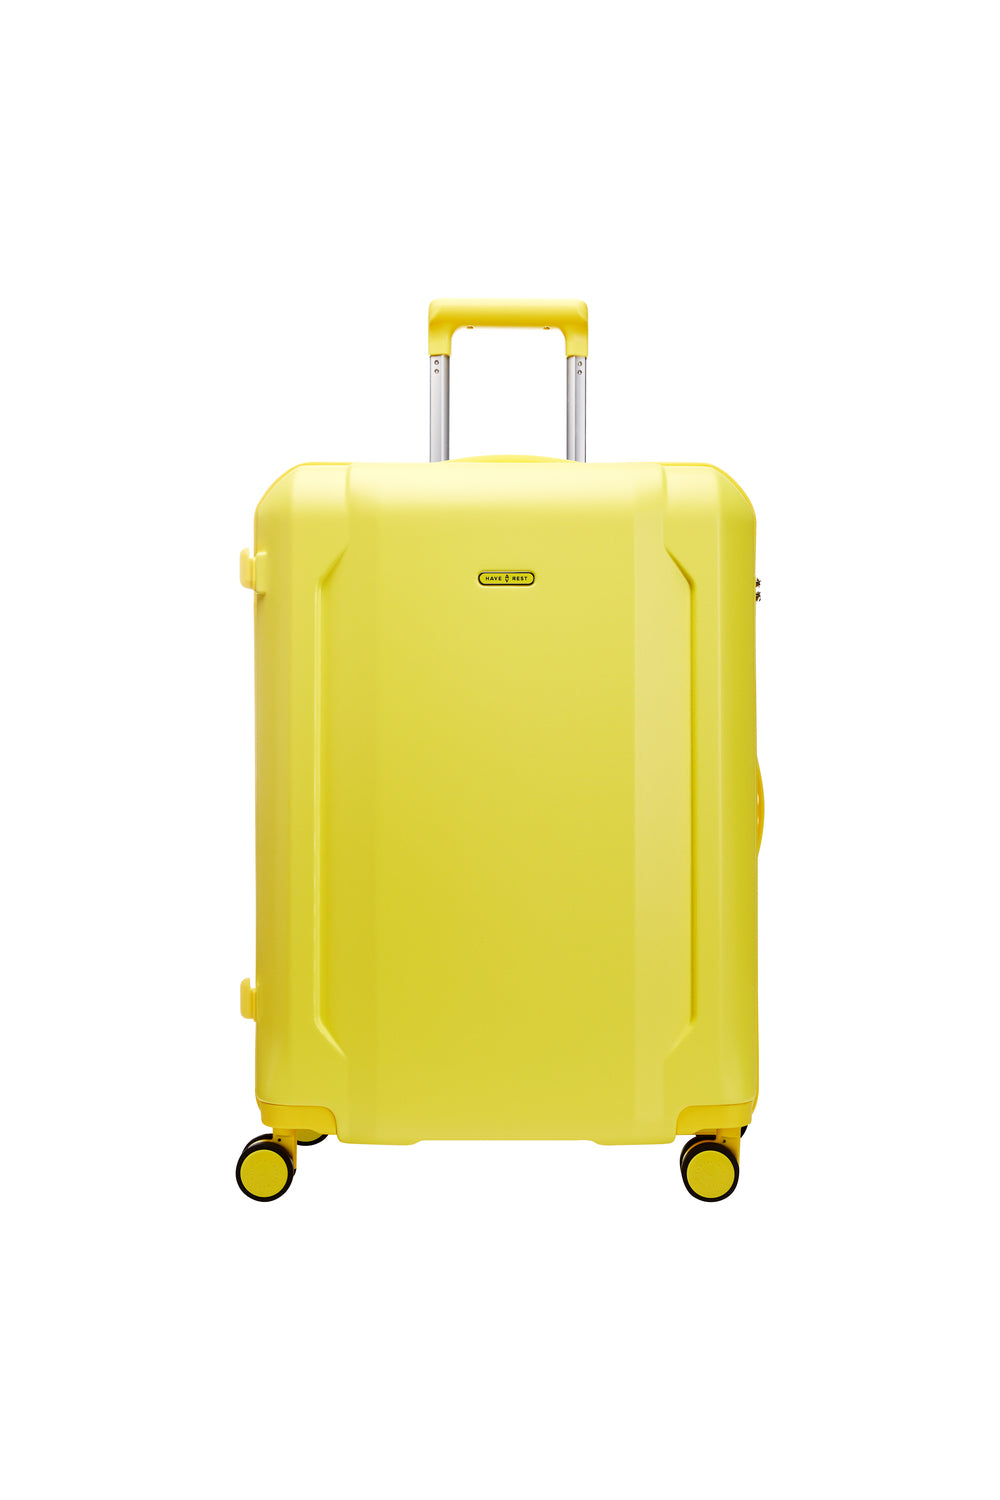 Smart suitcase Large size Sunny Lemon HAVE A REST